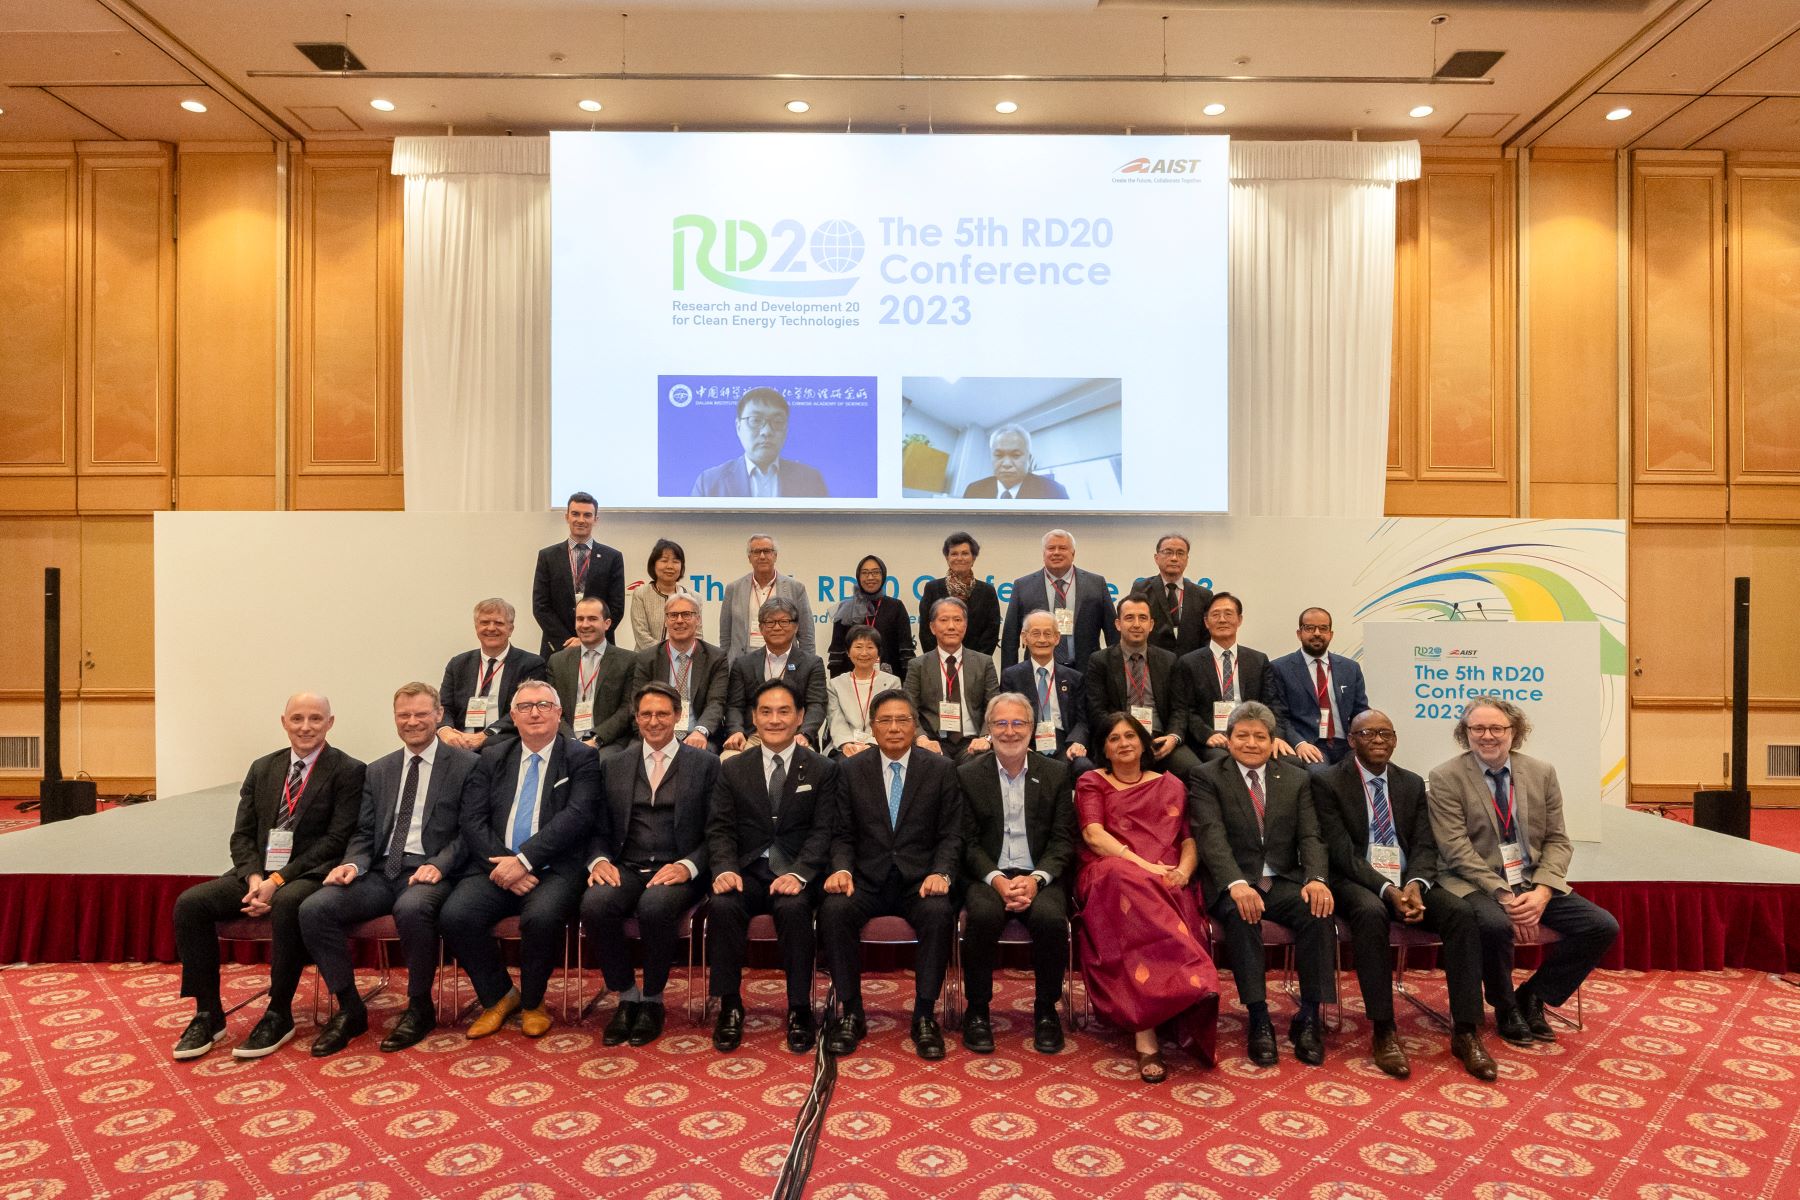 第5回RD20国際会議（2023）ダイジェスト動画を公開しました。